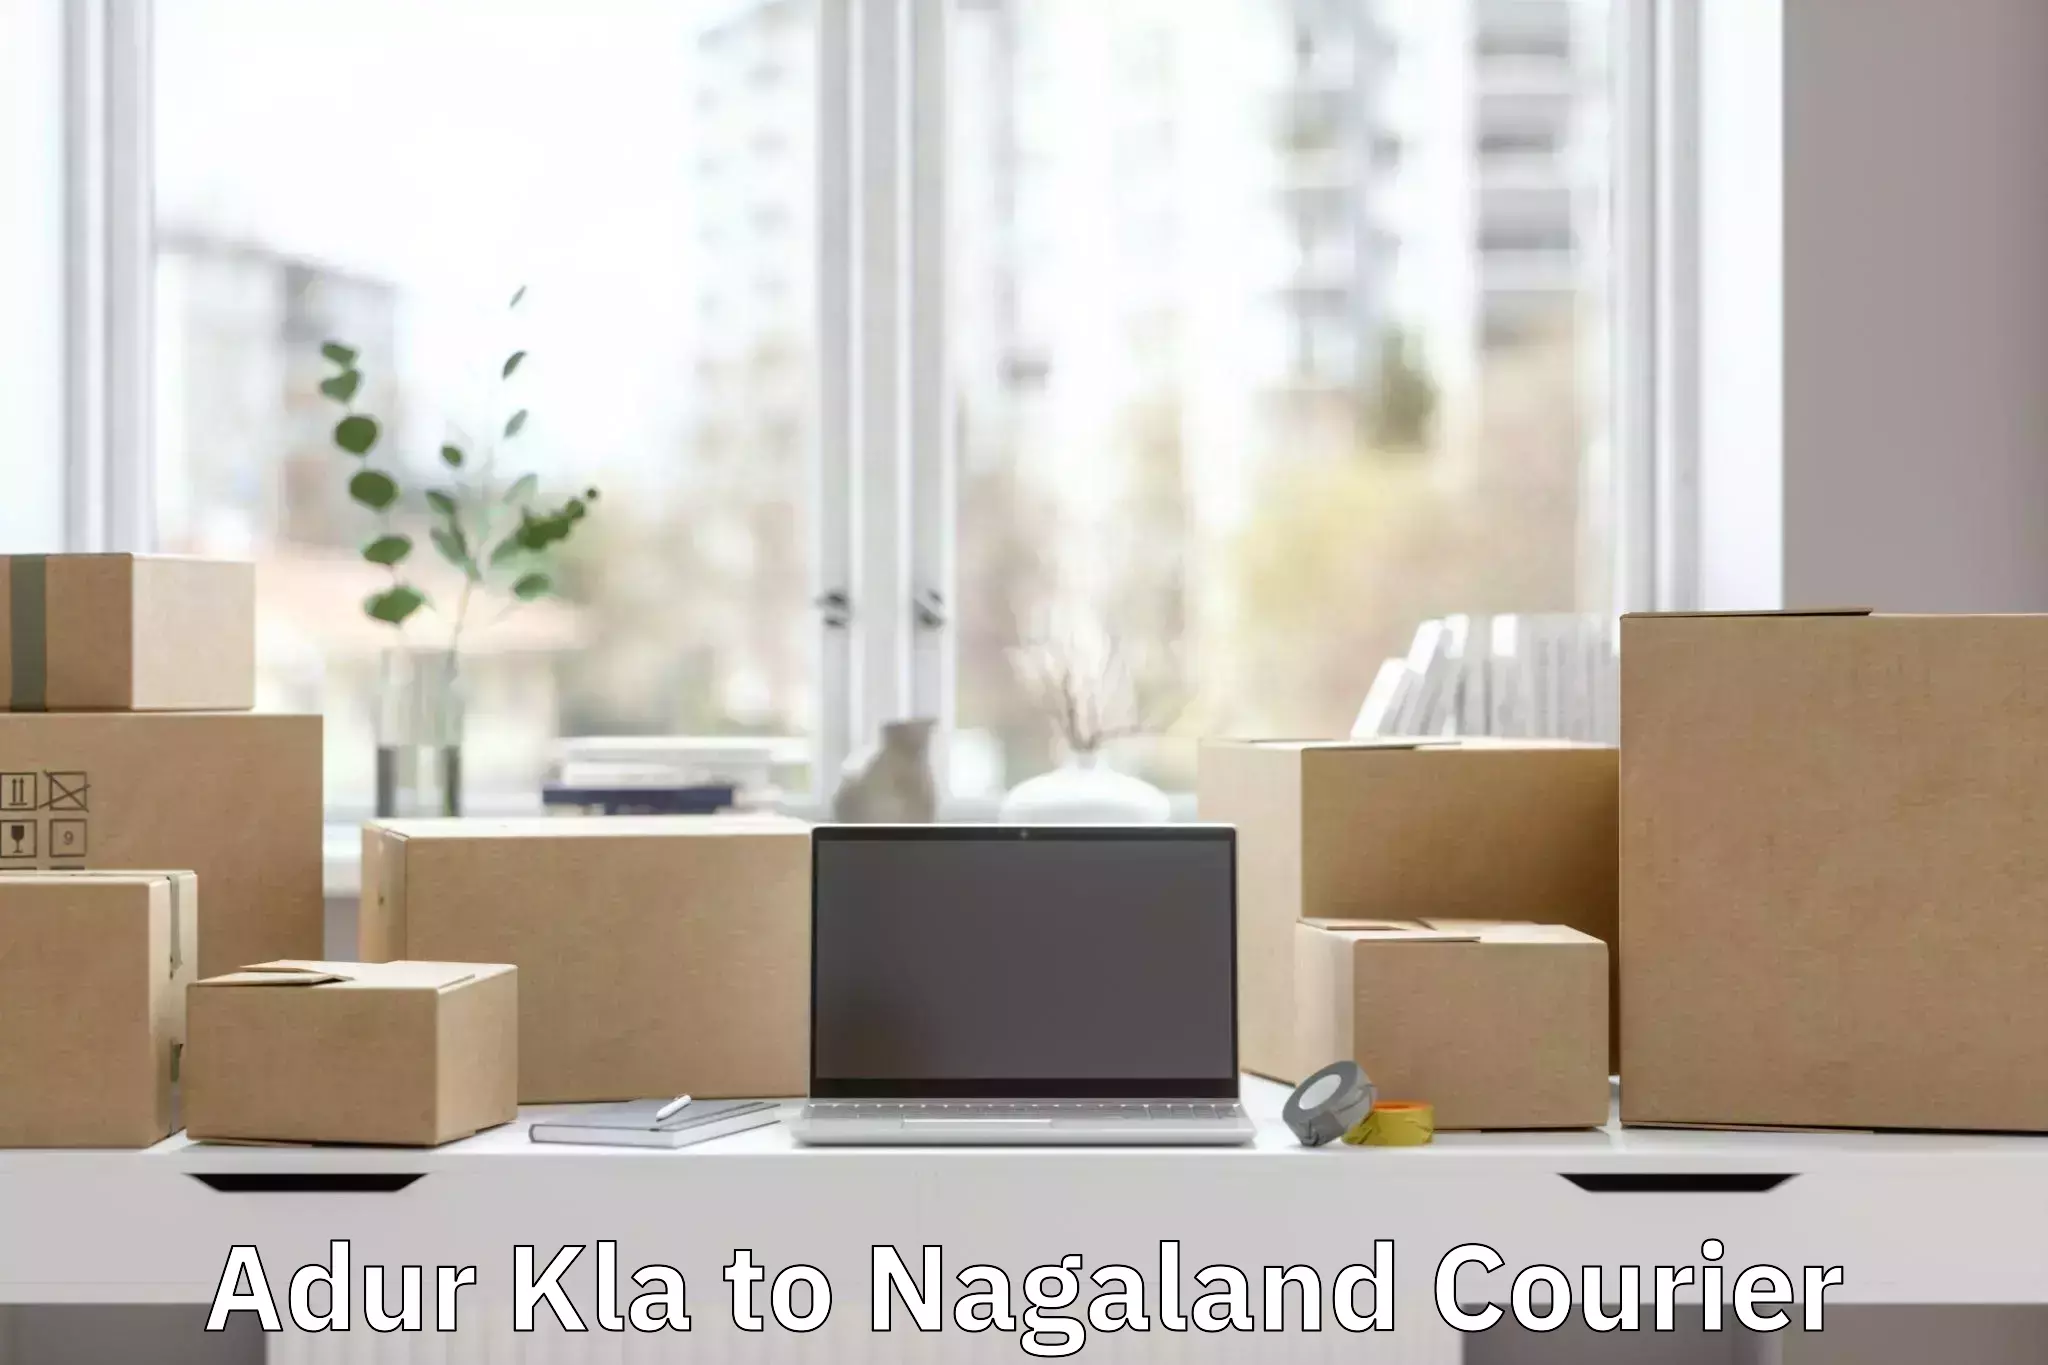 Luggage delivery app Adur Kla to Nagaland